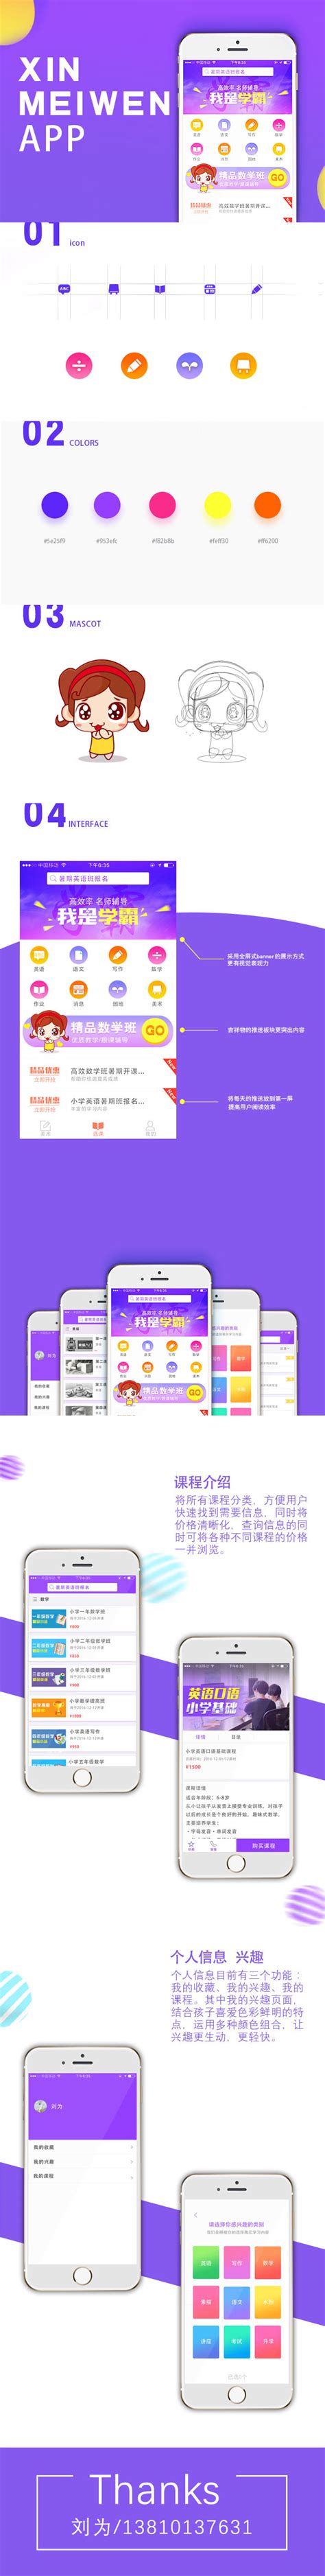 在线教育课程学习平台app iOS UI Kit套件 - 25学堂